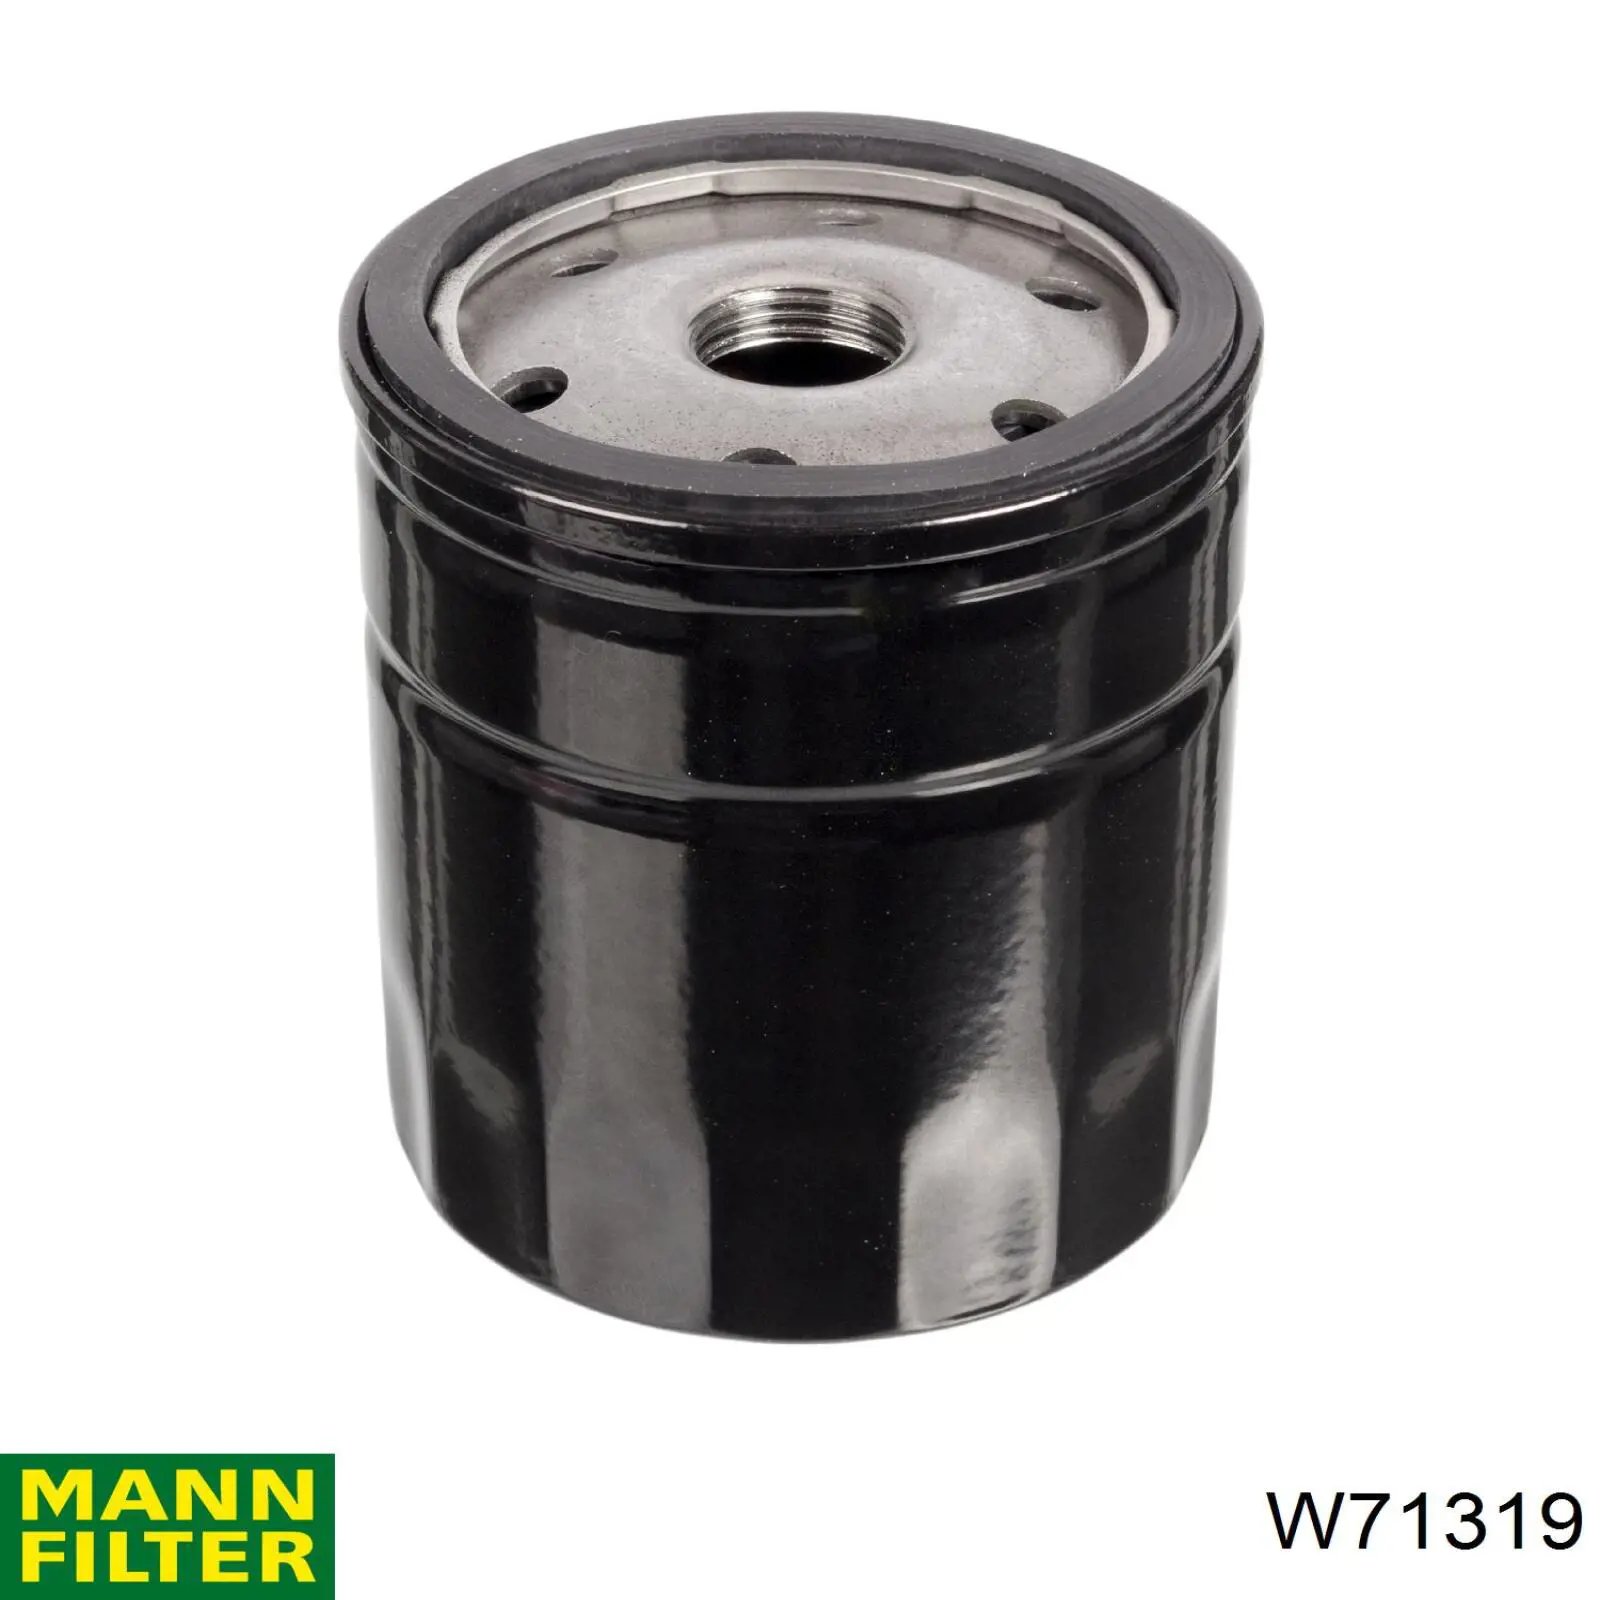 Filtro de aceite W71319 Mann-Filter